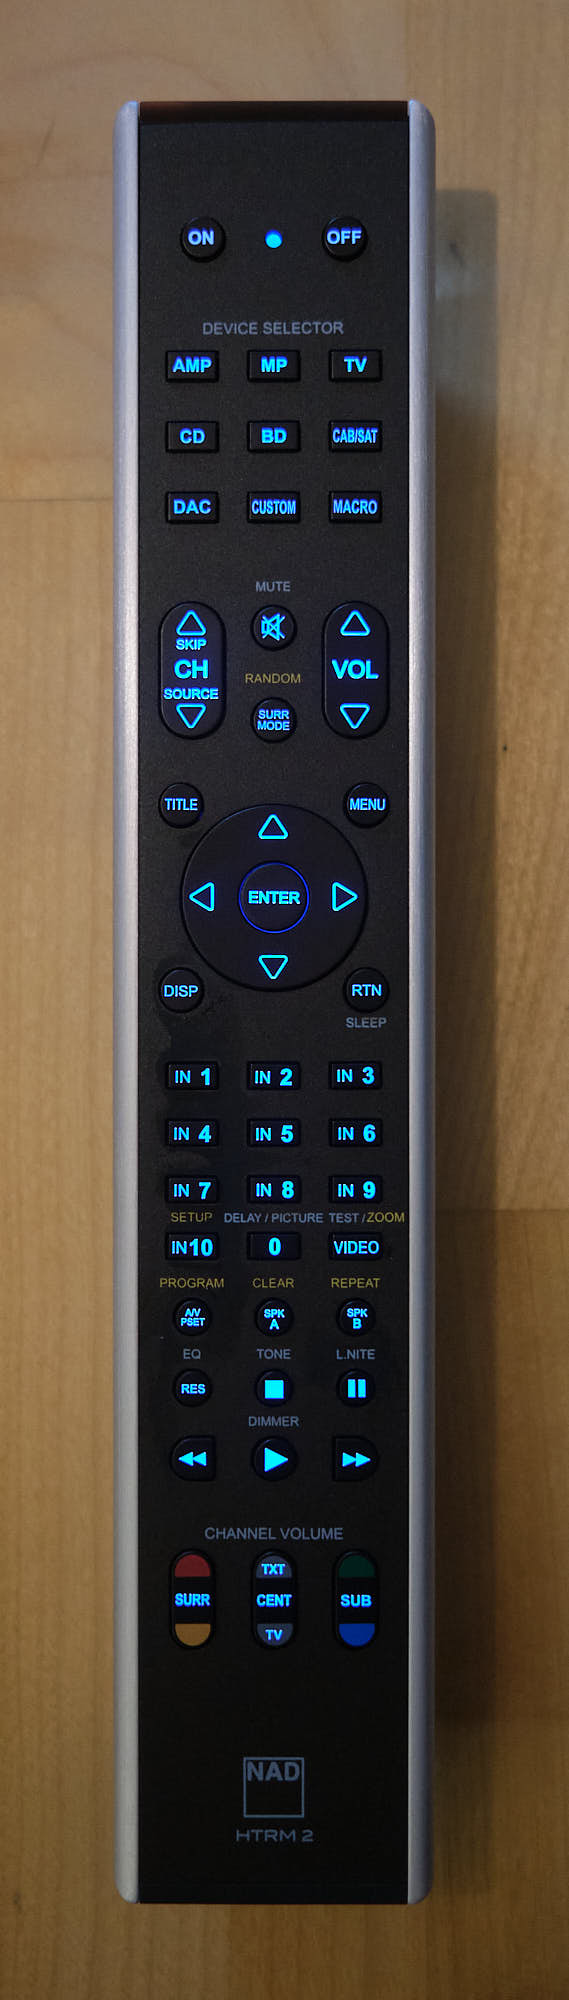 NAD M33 remote control